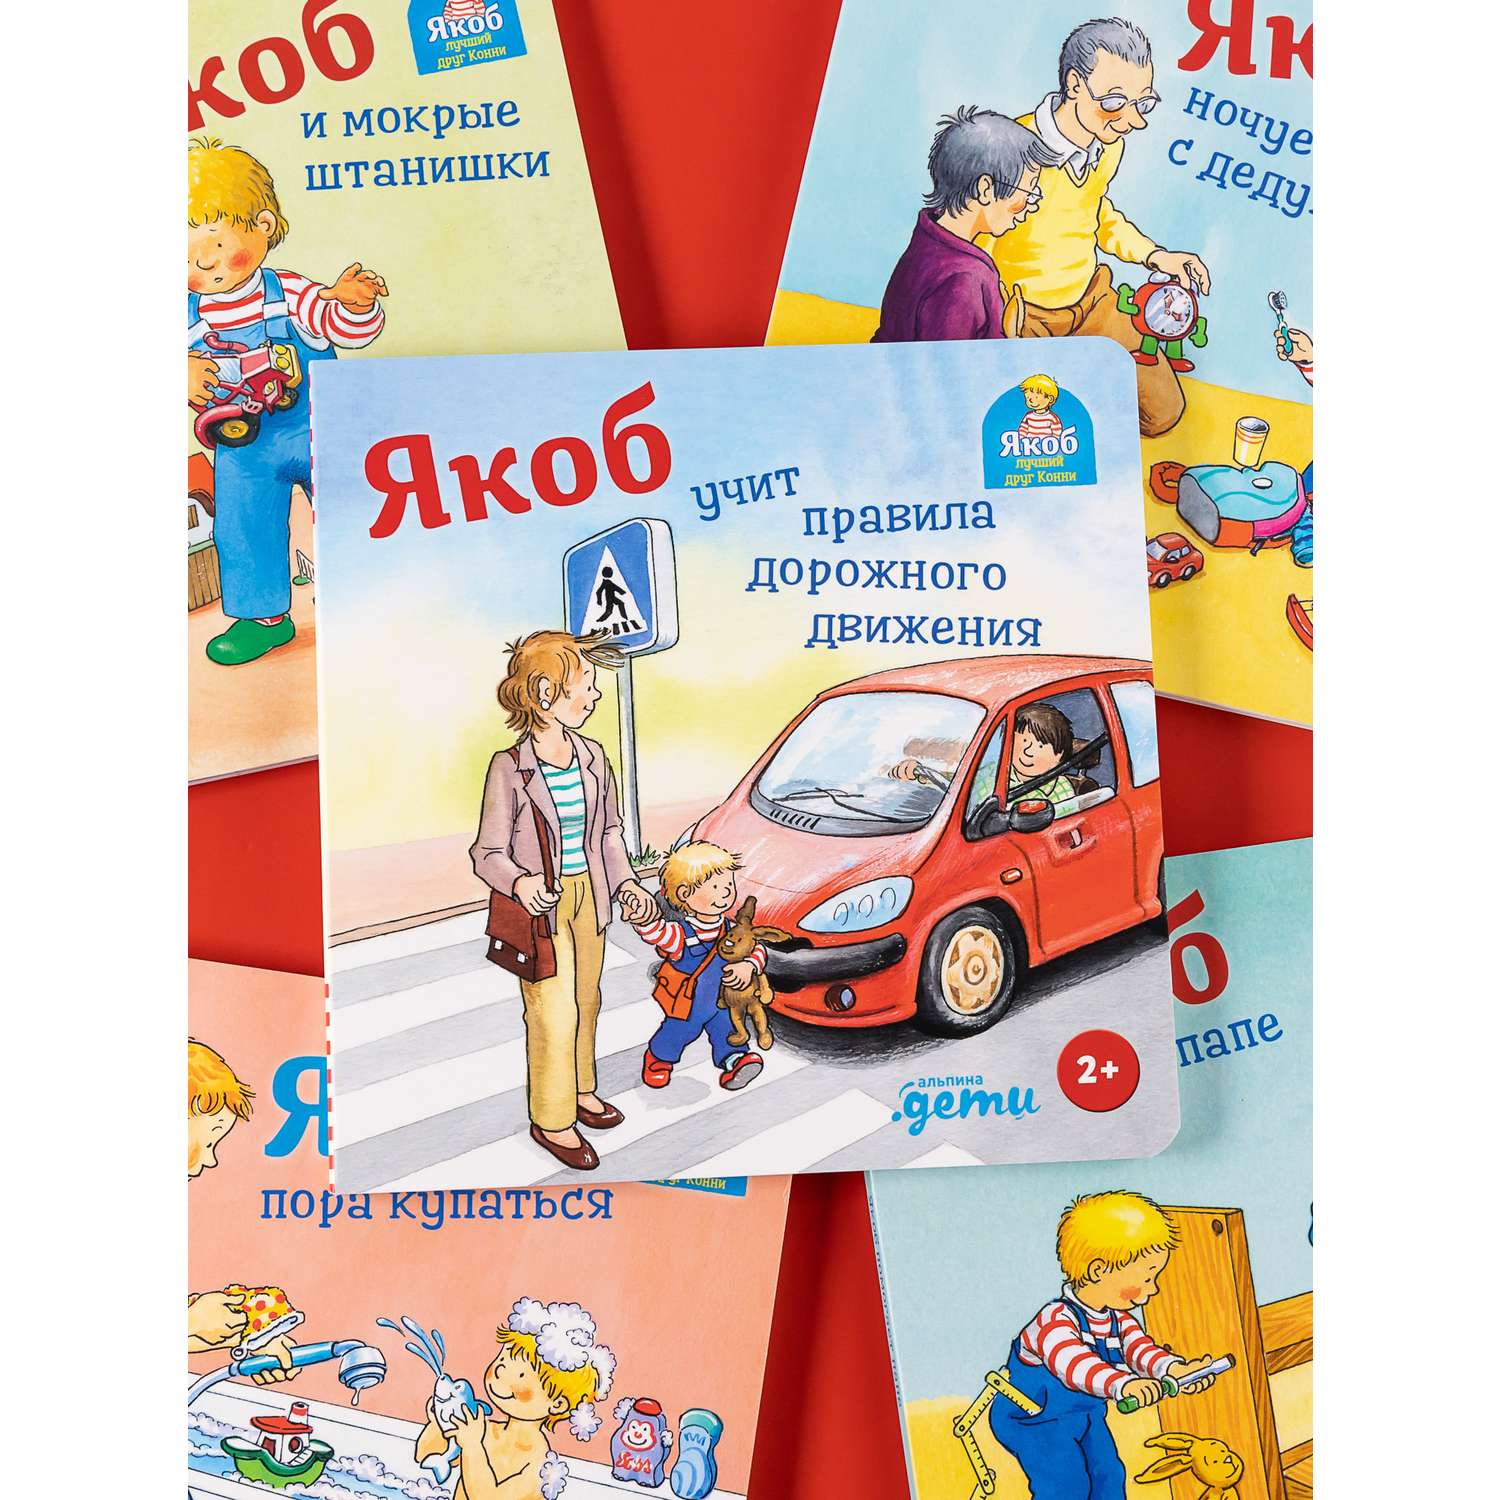 Художественная литература для детей на тему «Правила дорожного движения»